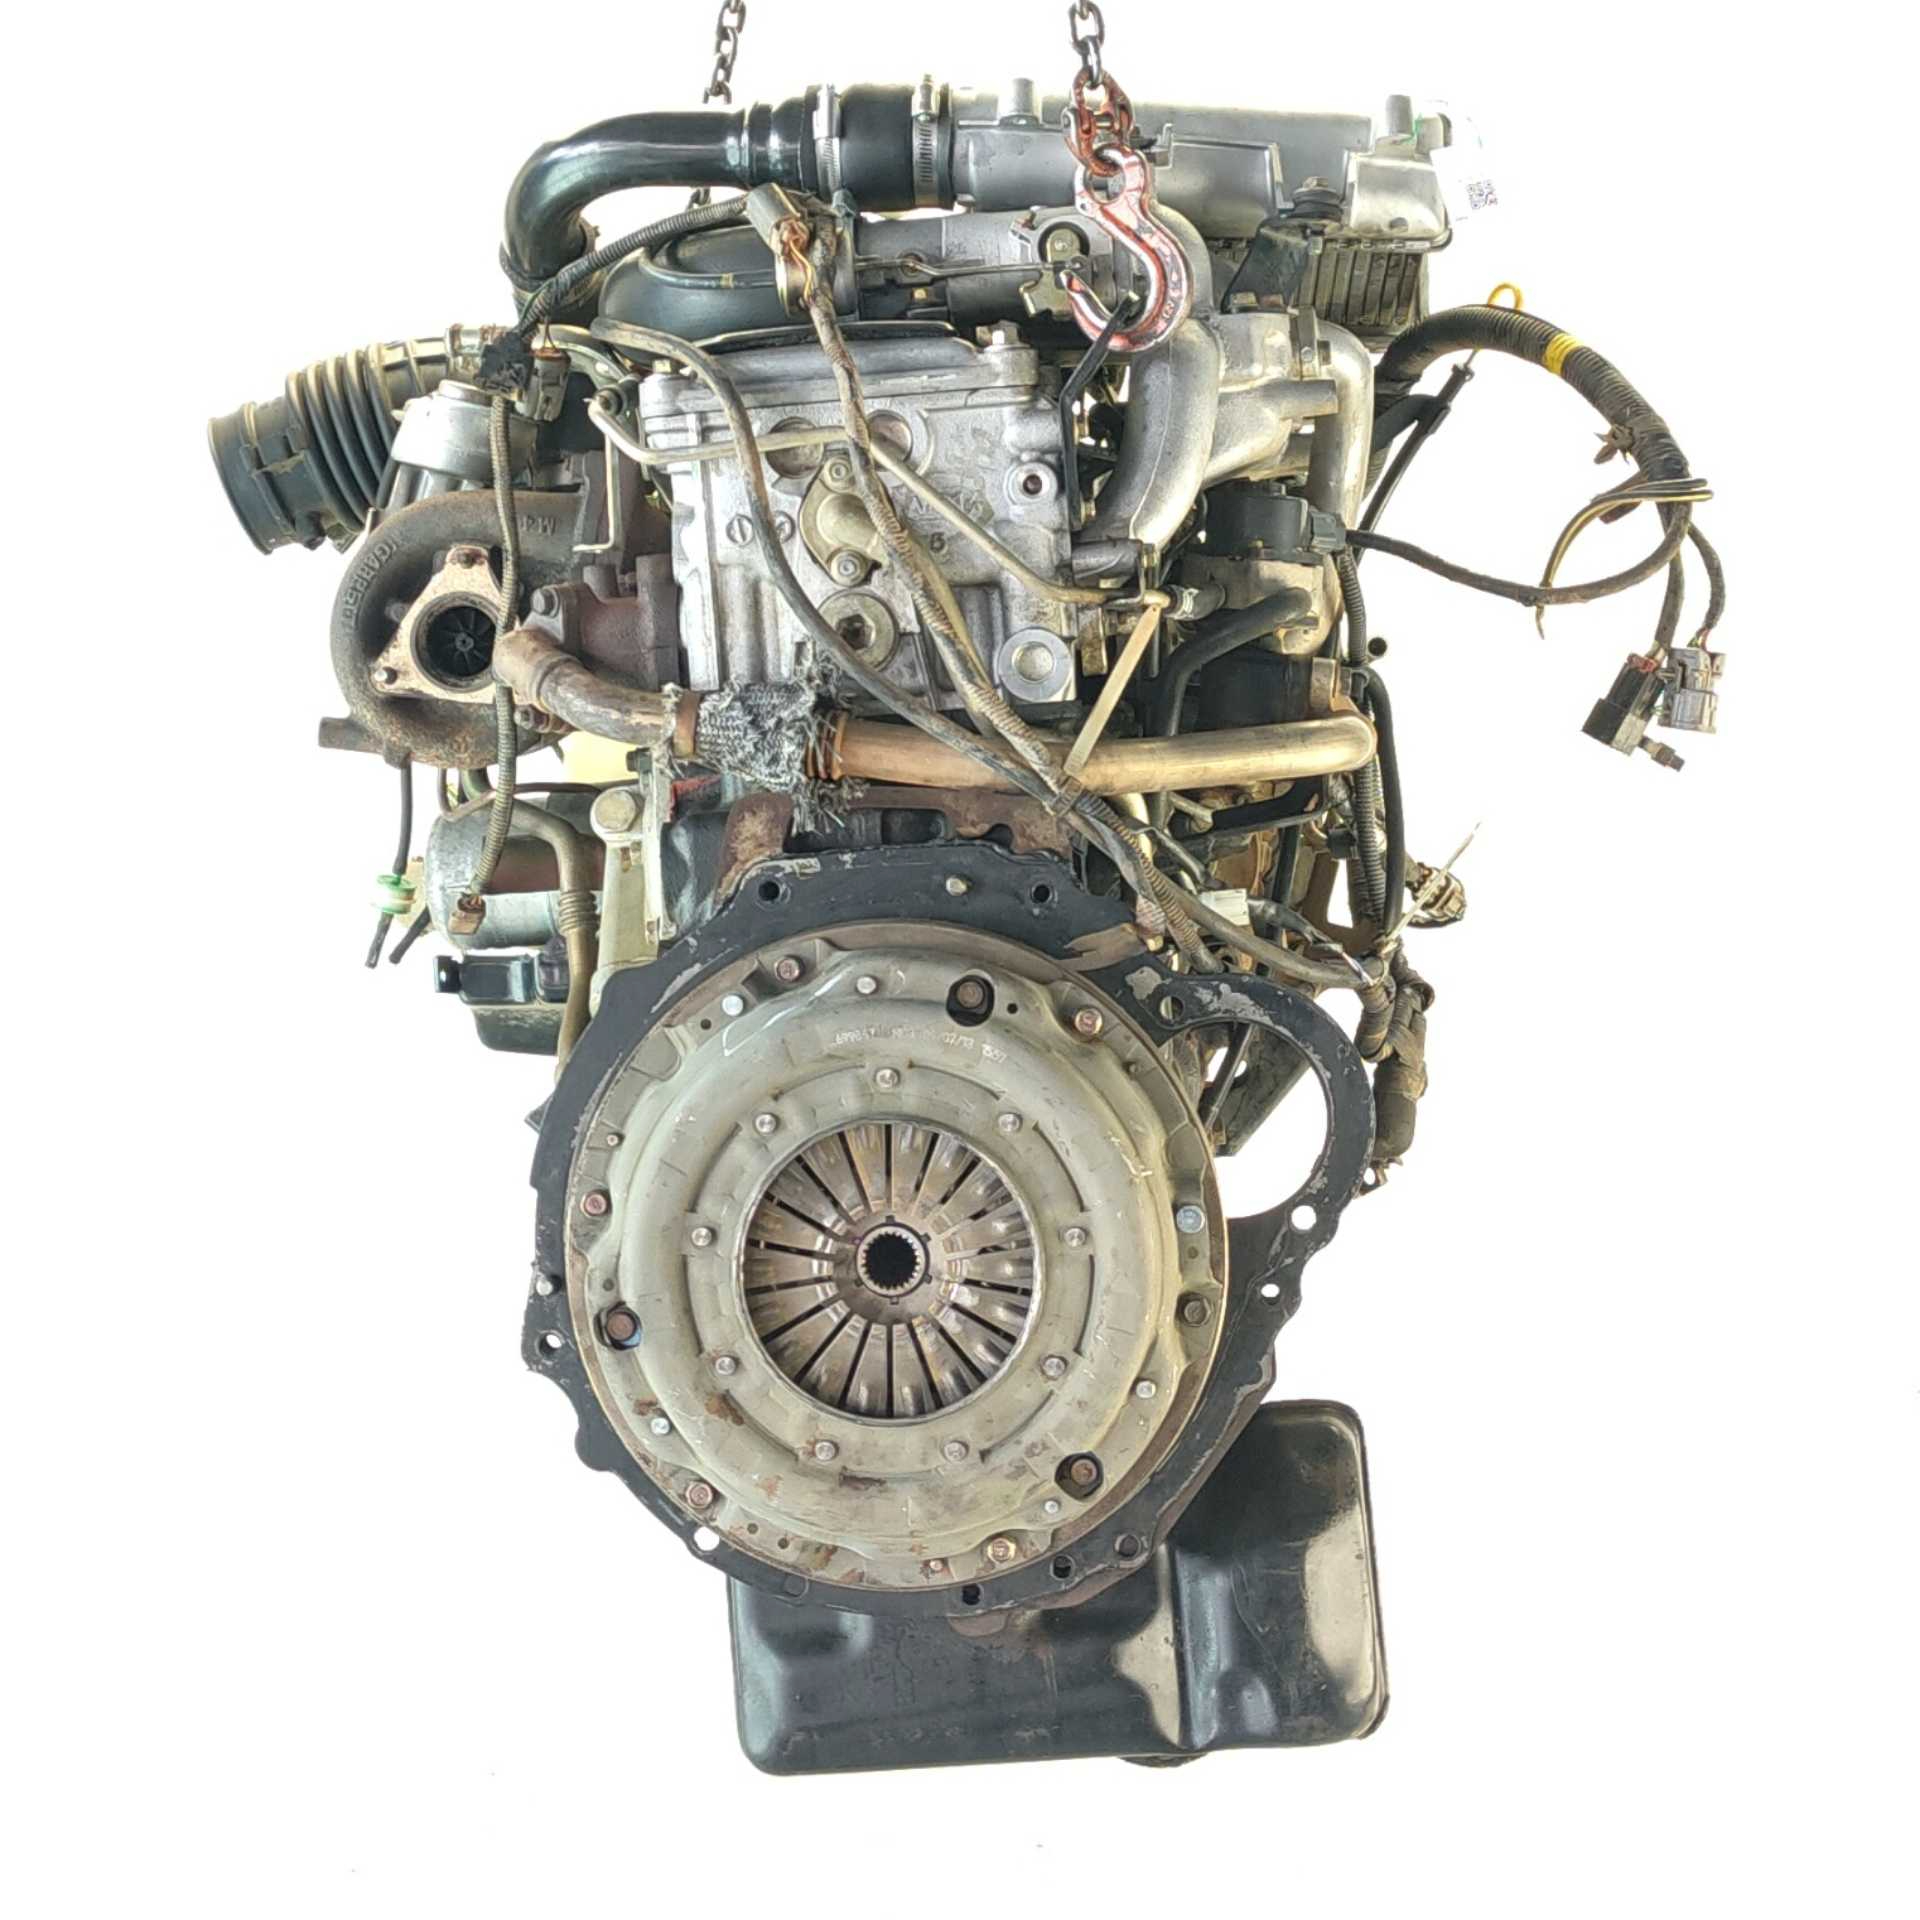 MOTOR NISSAN TERRANO II 2.7 TD 4WD (74 KW / 101 CV) (02.1993 – 01.2002)